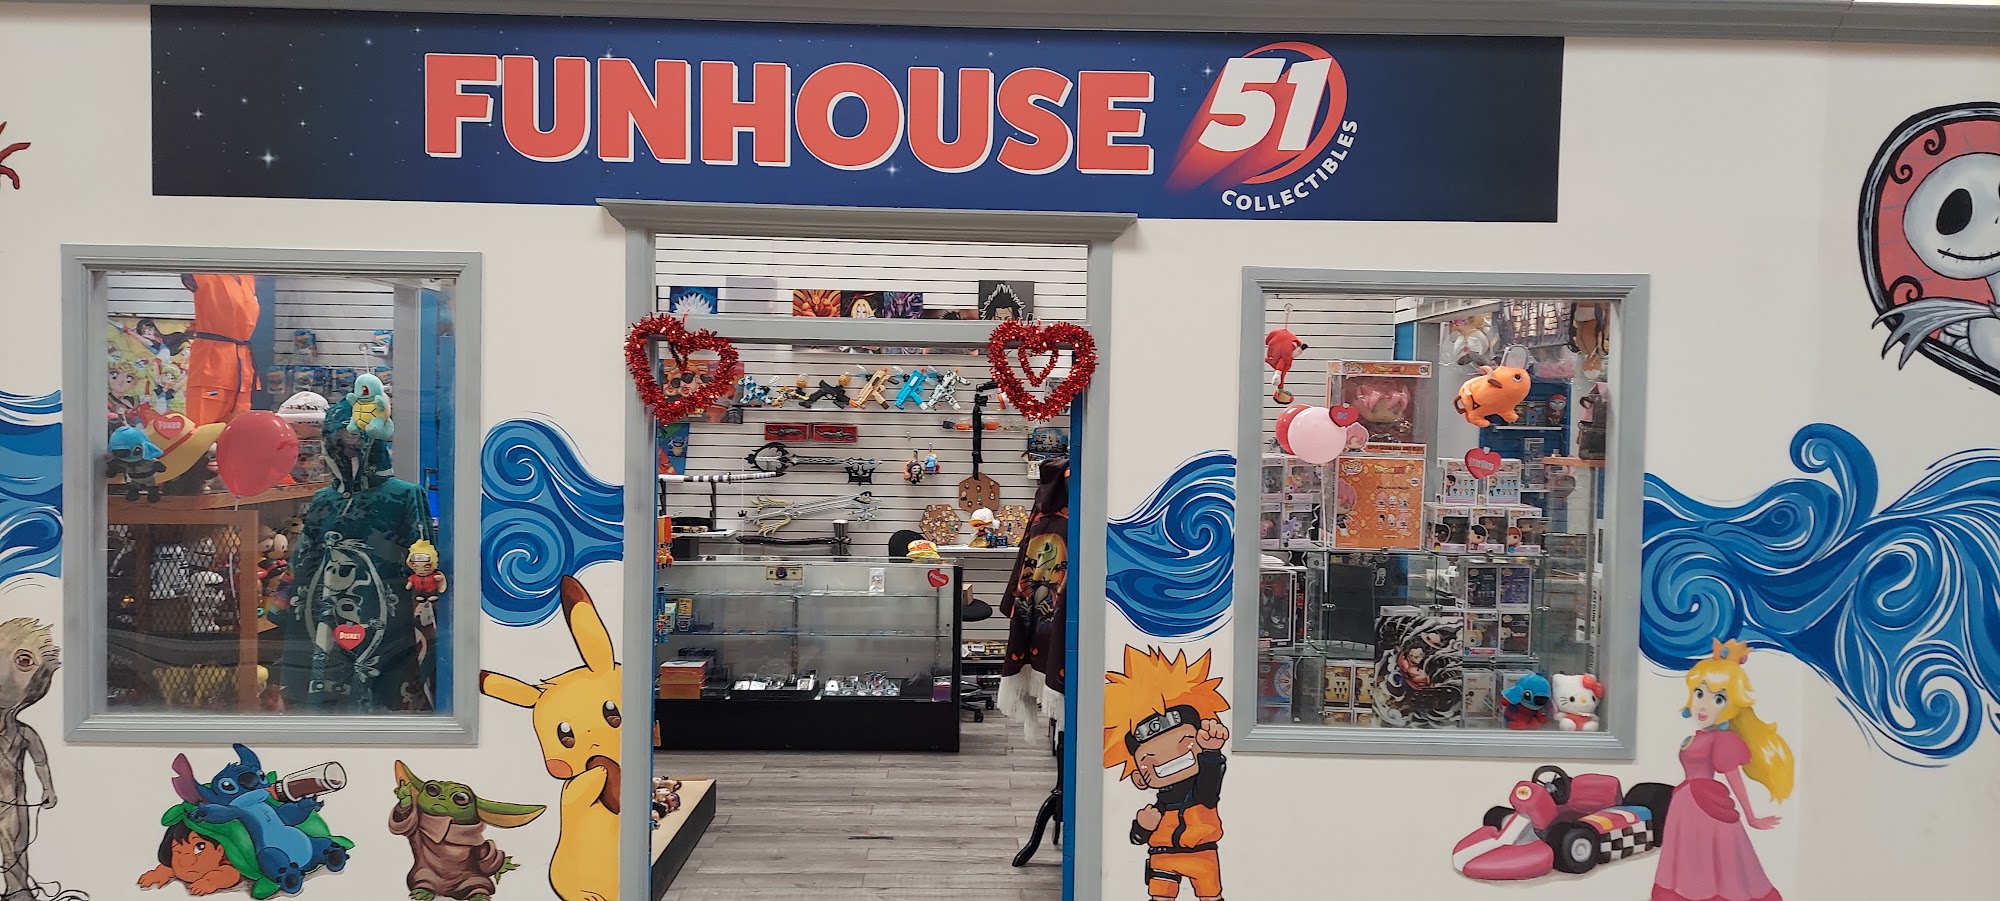 Funhouse51 Collectibles